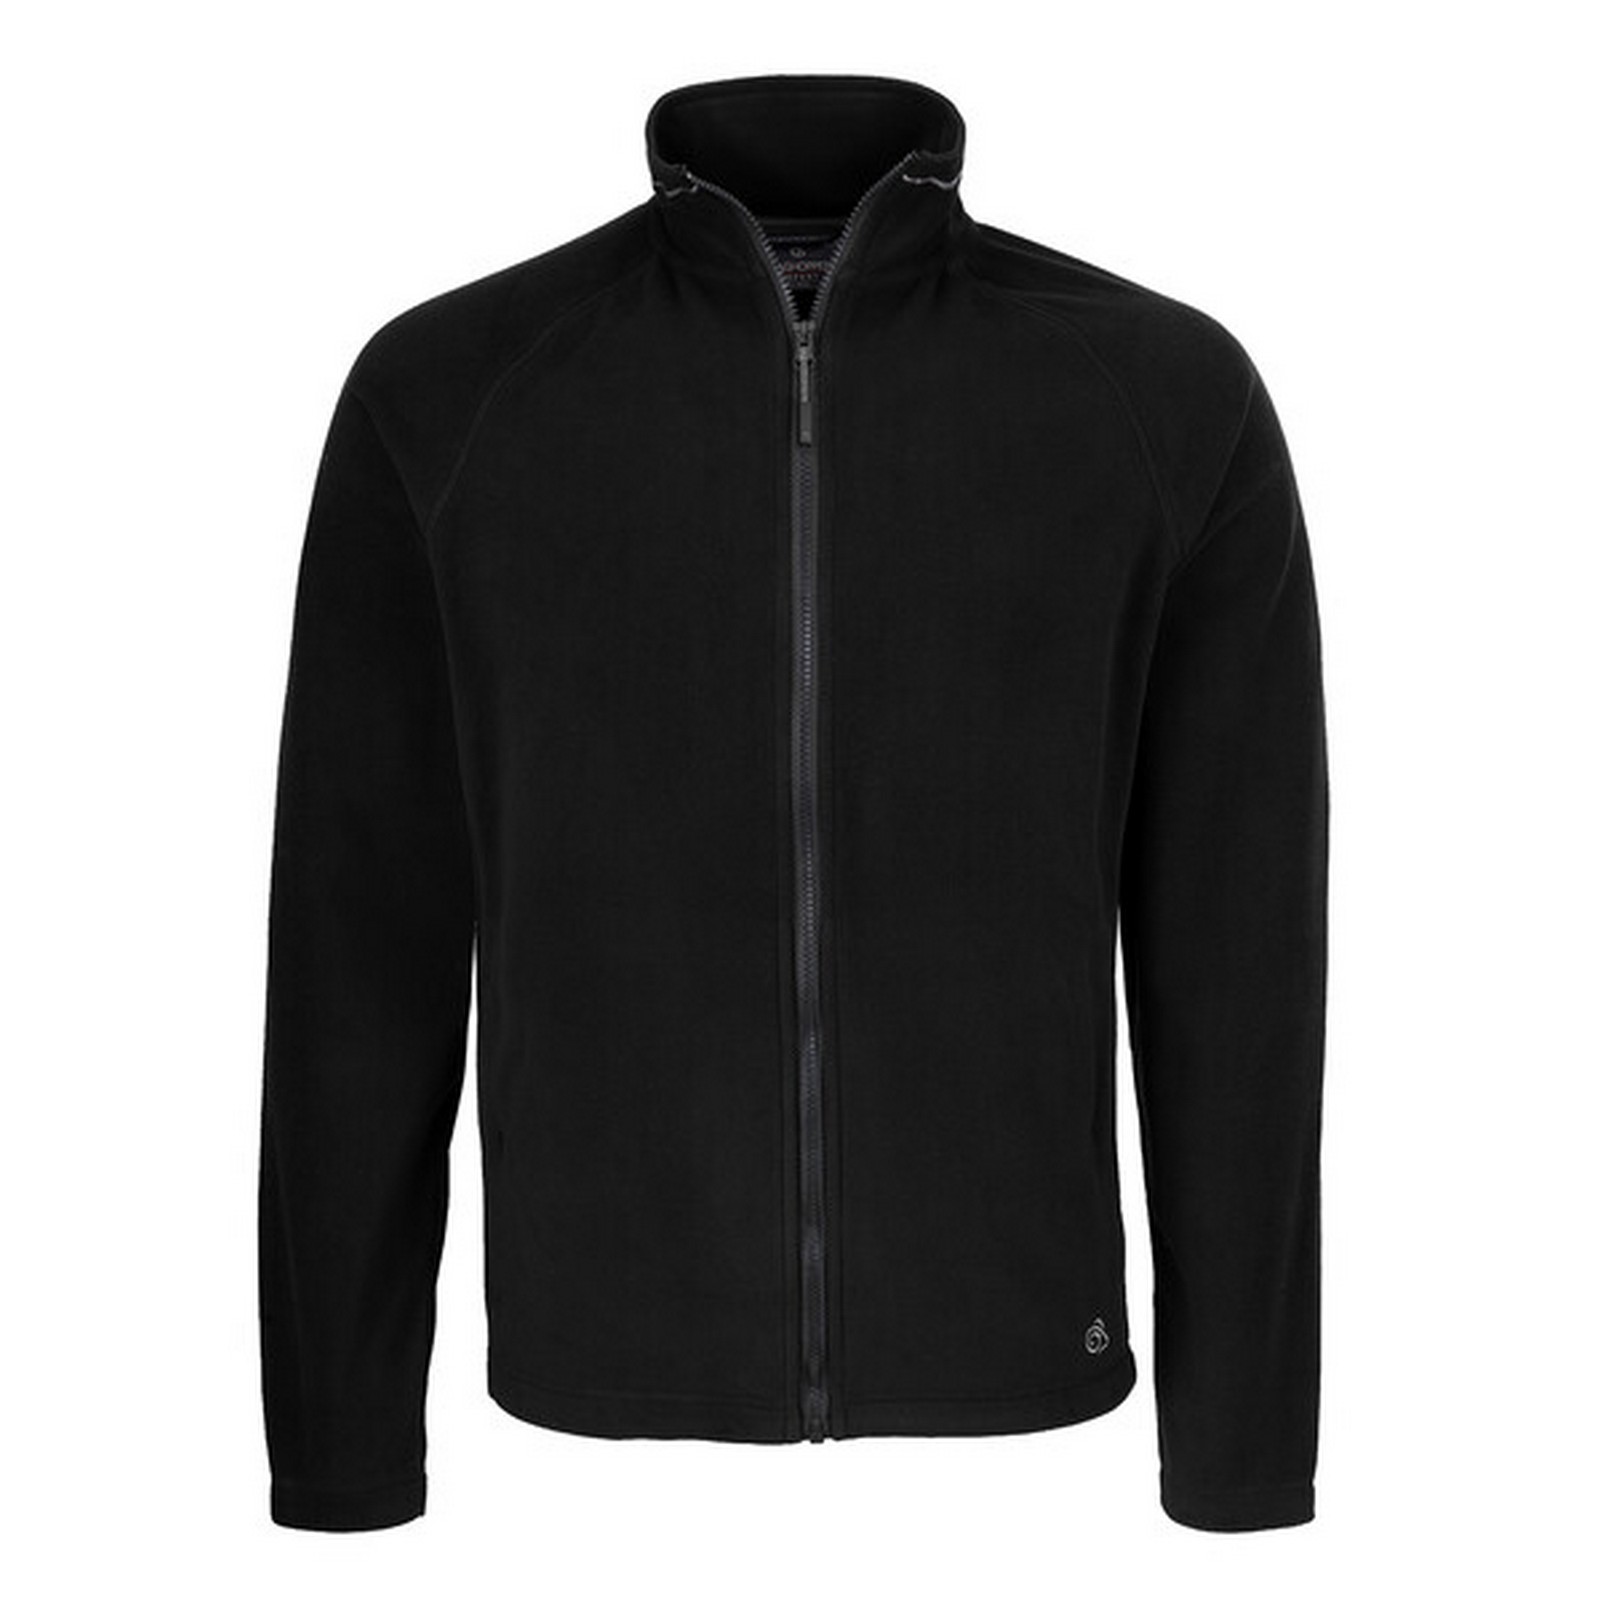 Craghoppers full-zip fleece jacket | WISE Worksafe